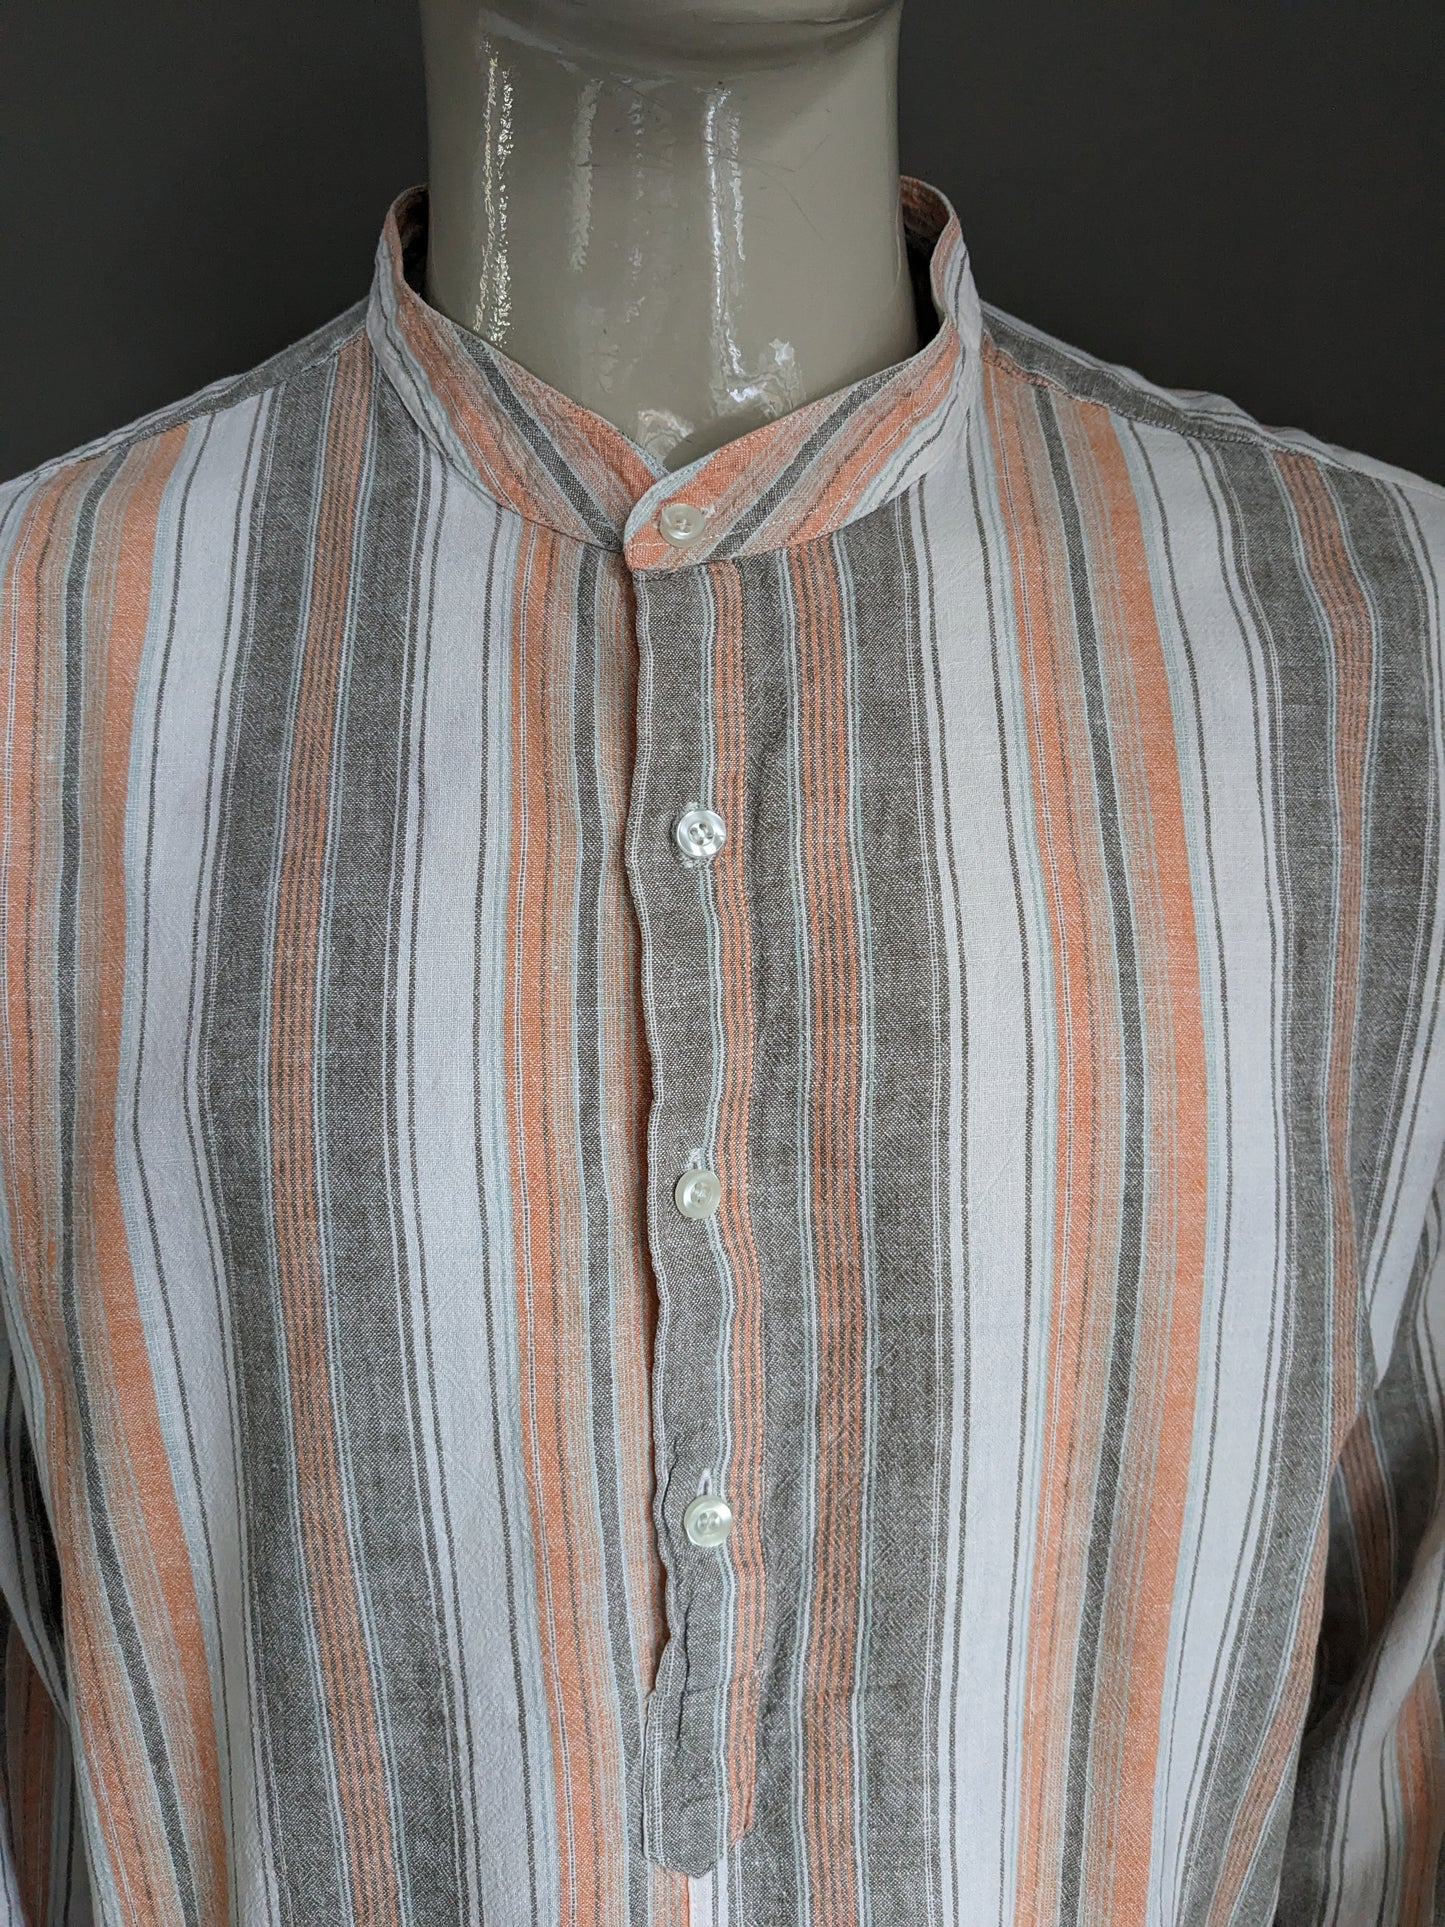 Magion / camicia da polo GW vintage con colletto rialzato / agricoltori / MAO. Strisce grigio arancione. 55% di lino. Taglia xxl.